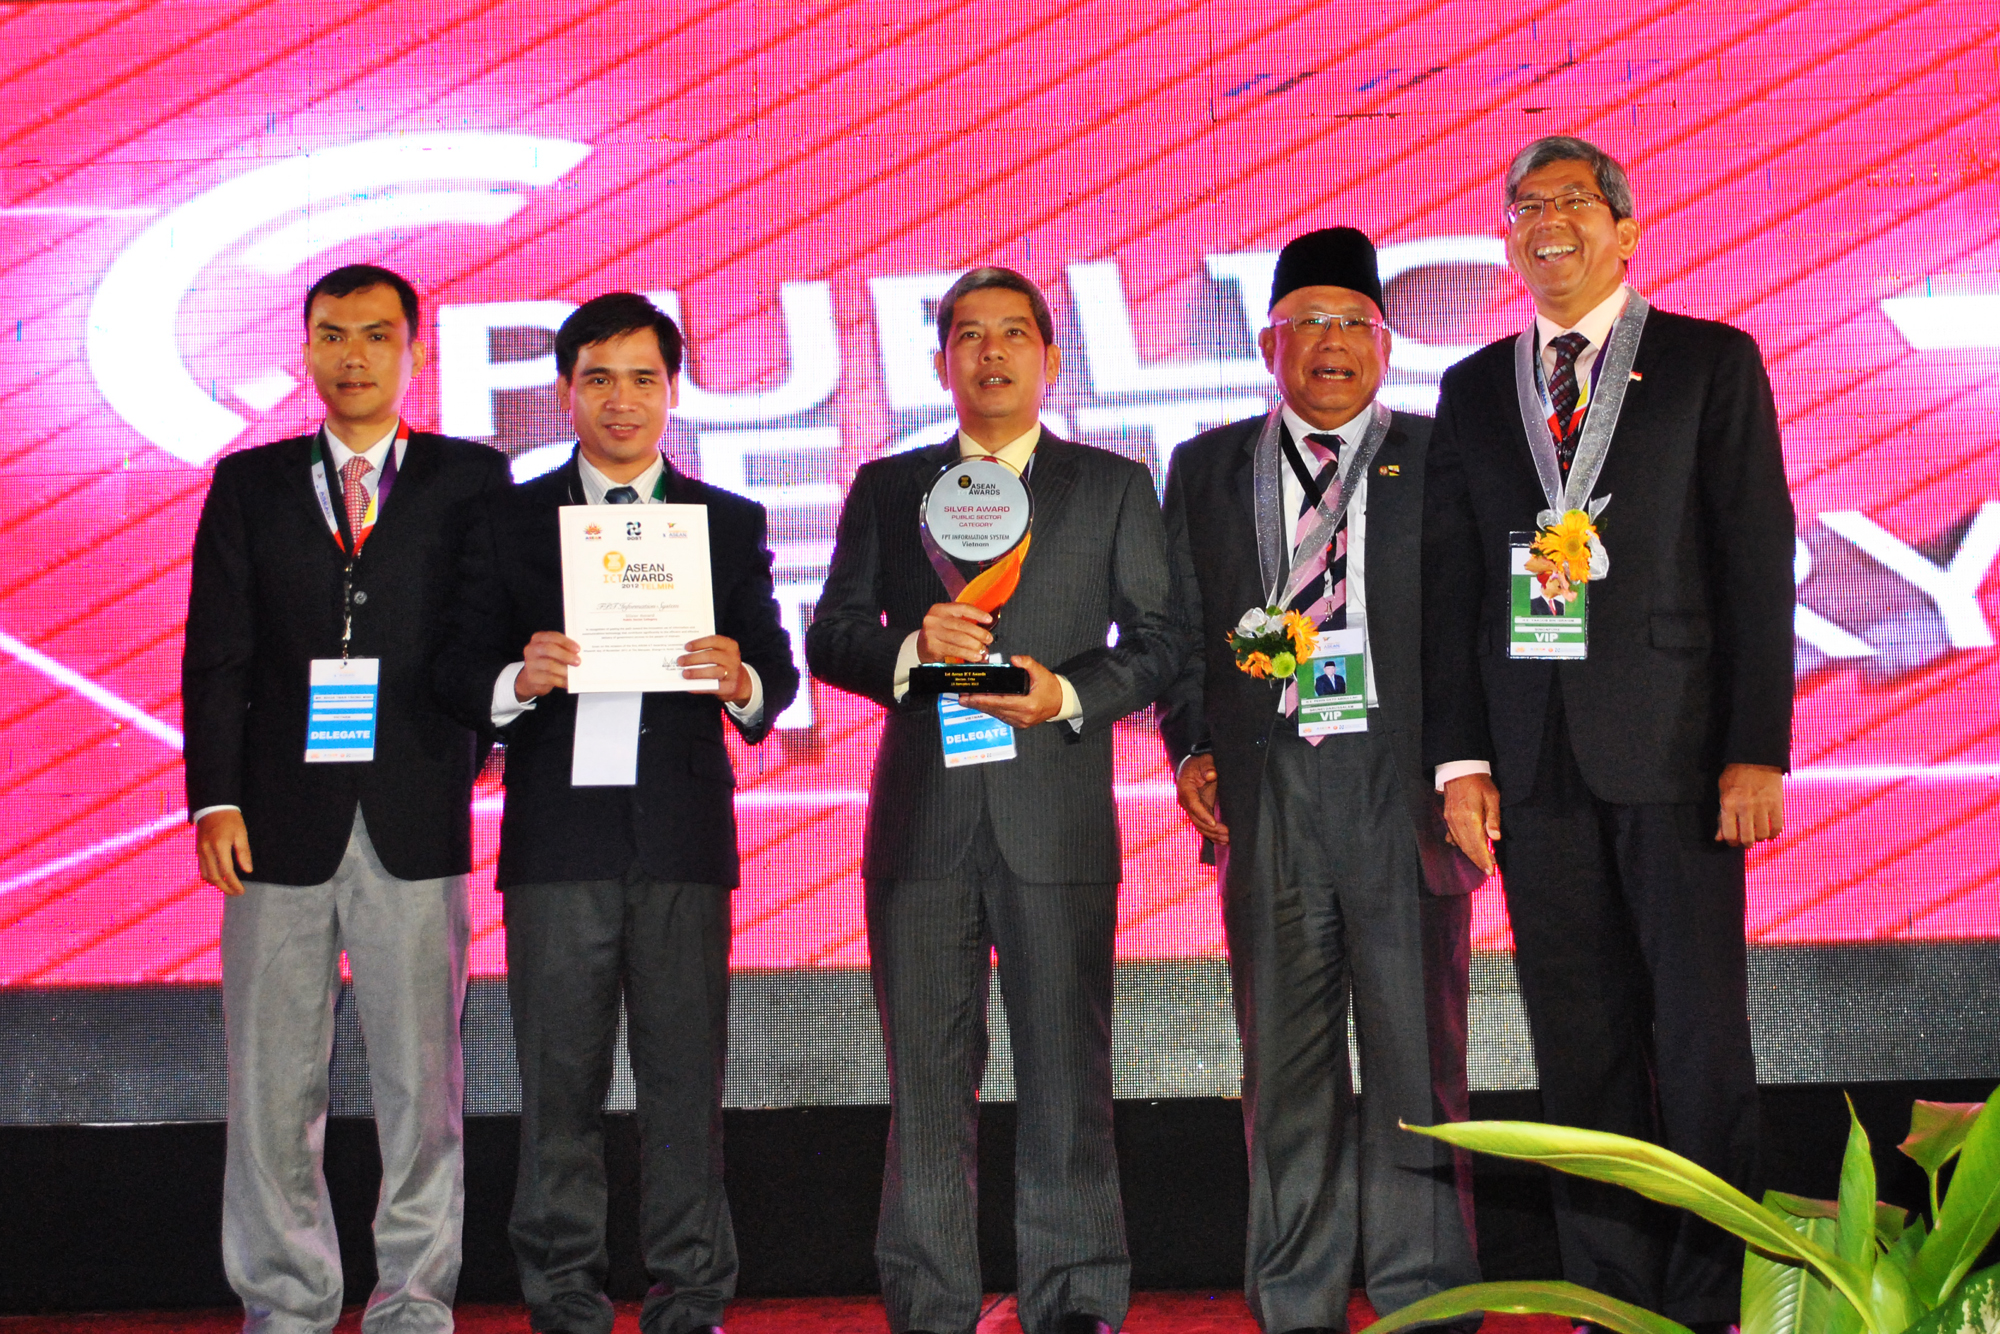 Hệ thống thông tin chính quyền điện tử – FPT.eGOV đạt Giải Bạc – Giải thưởng Công nghệ thông tin – Truyền thông Đông Nam Á (ASEAN ICT Awards – AICTA) 2012